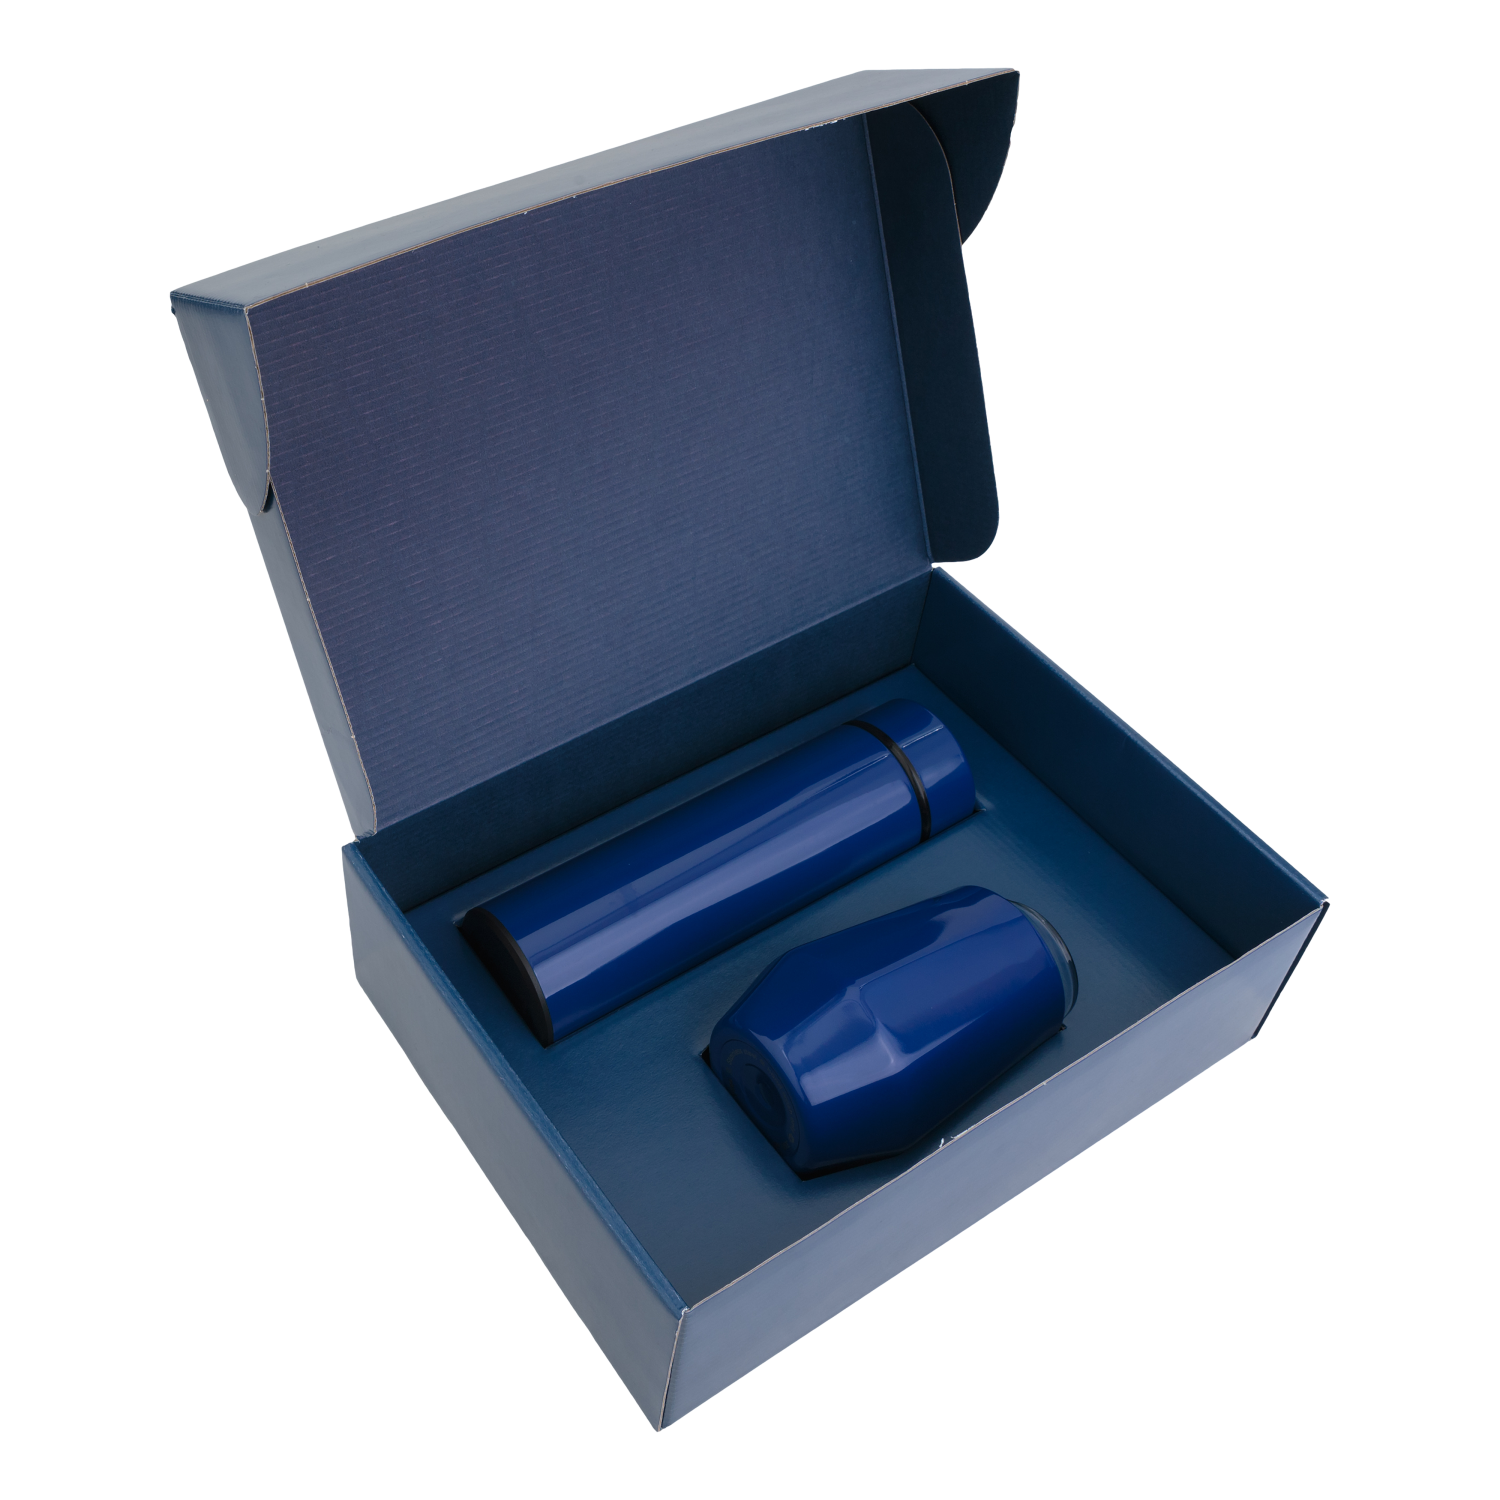 Набор Hot Box E (синий), синий, металл, микрогофрокартон